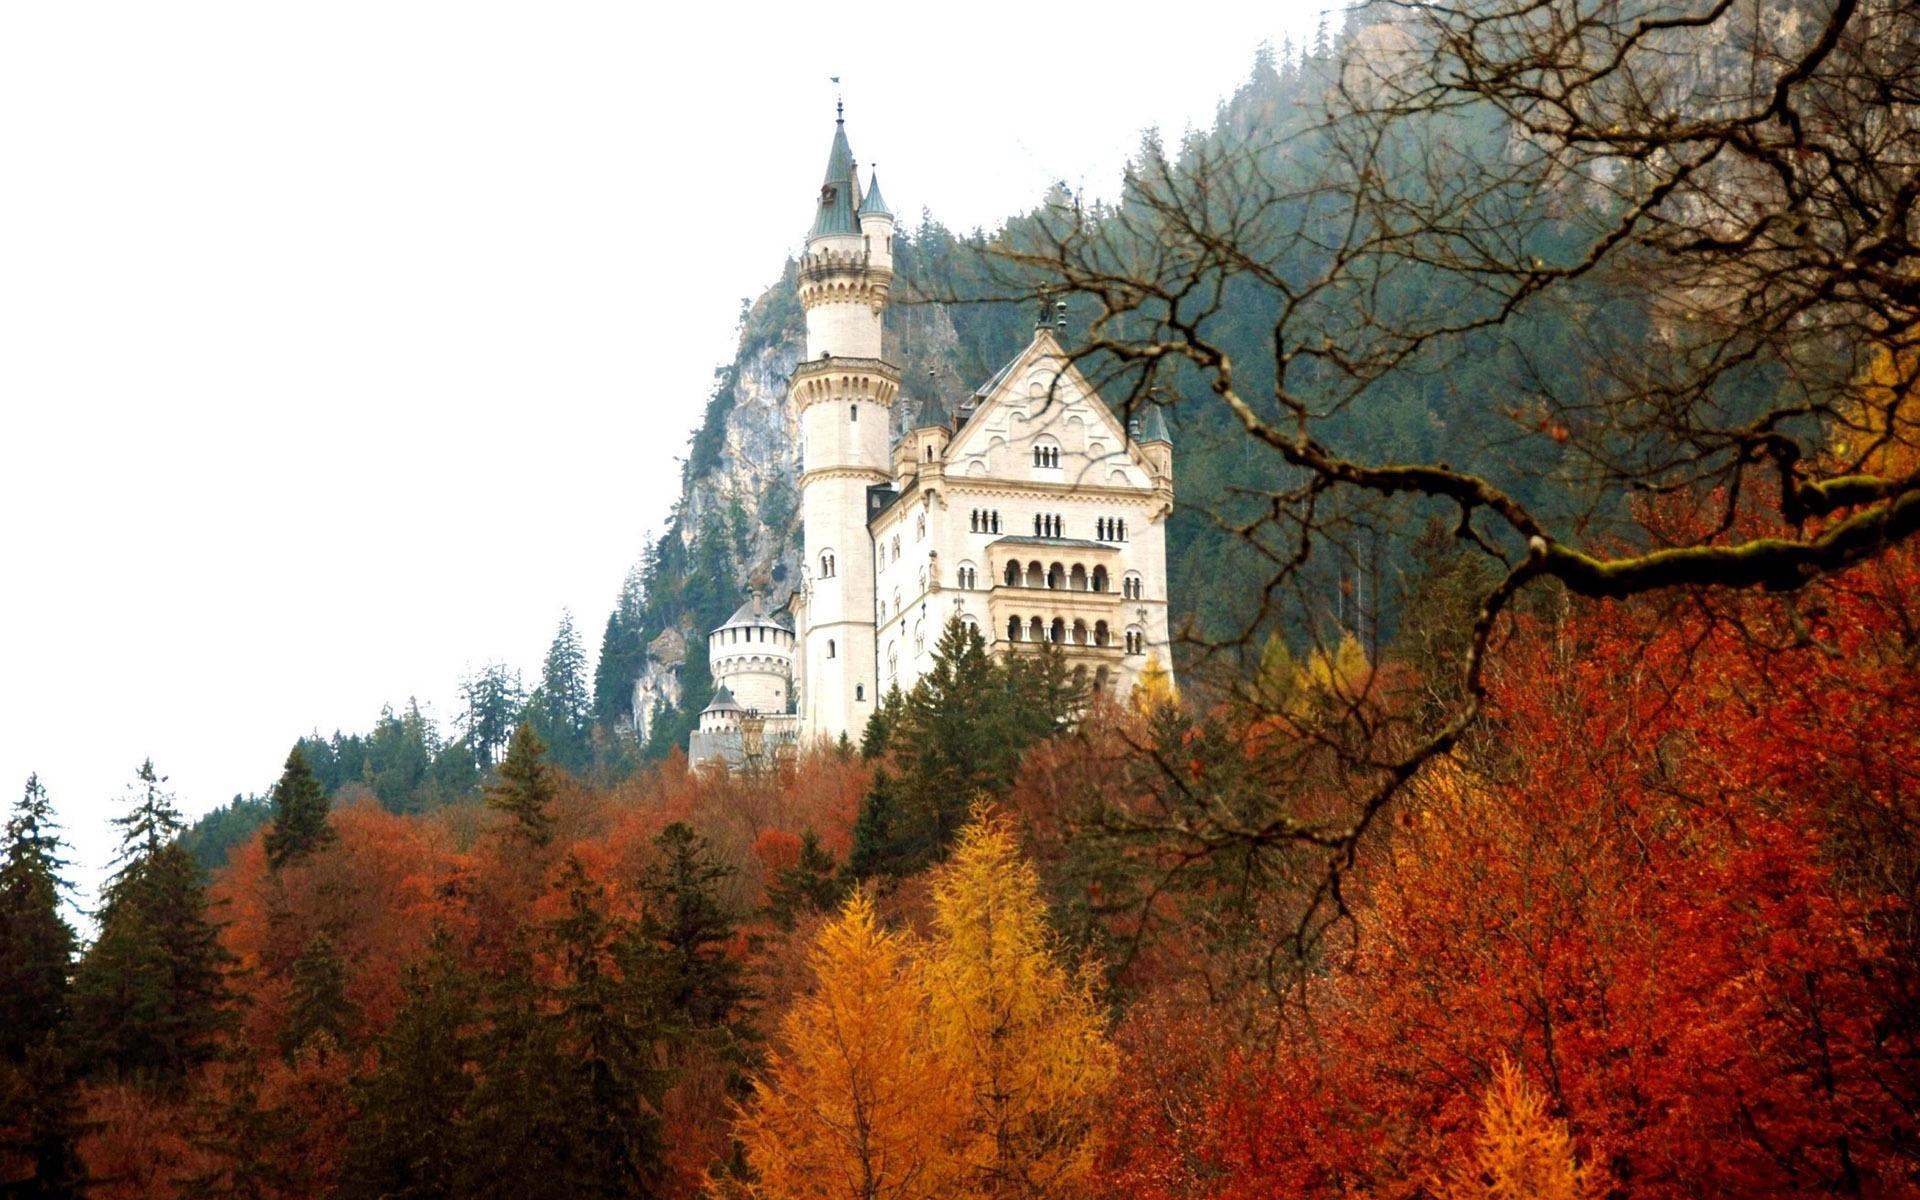 Neuschwanstein Castle in the autumn HD desktop wallpaper, Widescreen, High Definition